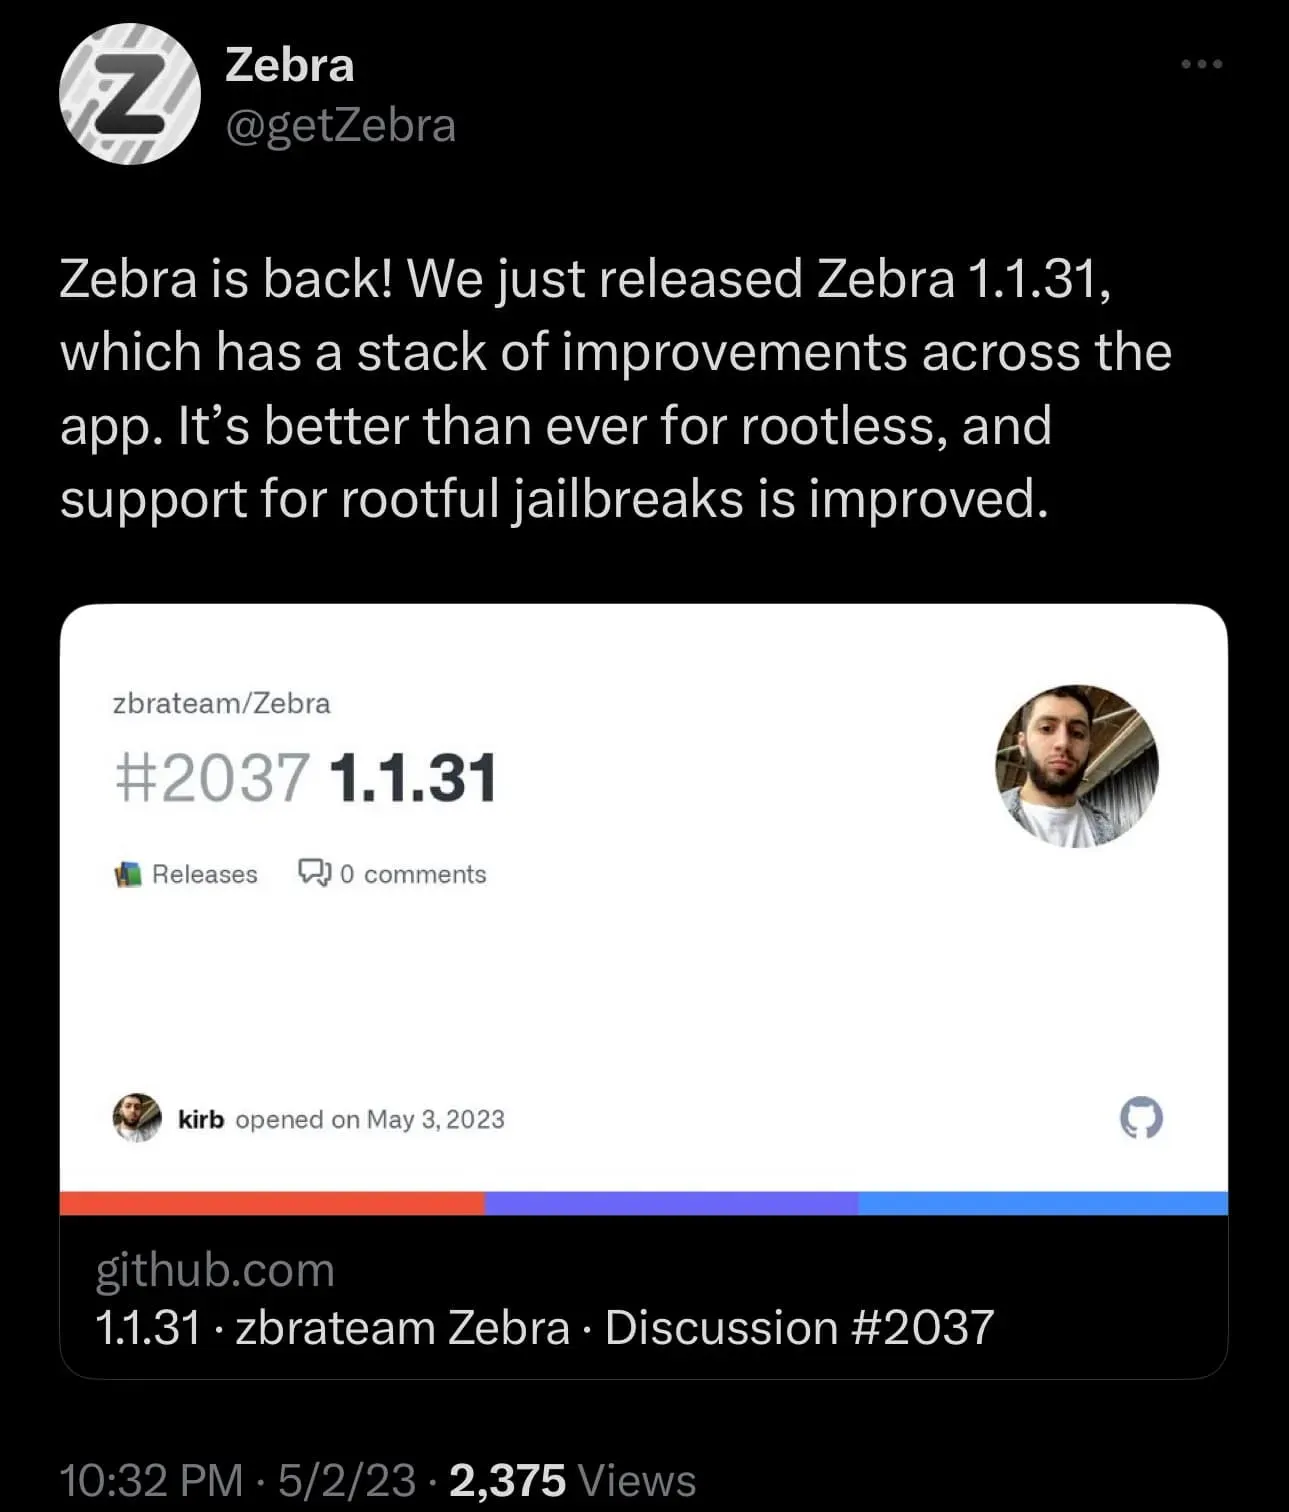 Zebra atualizado para v1.1.31.